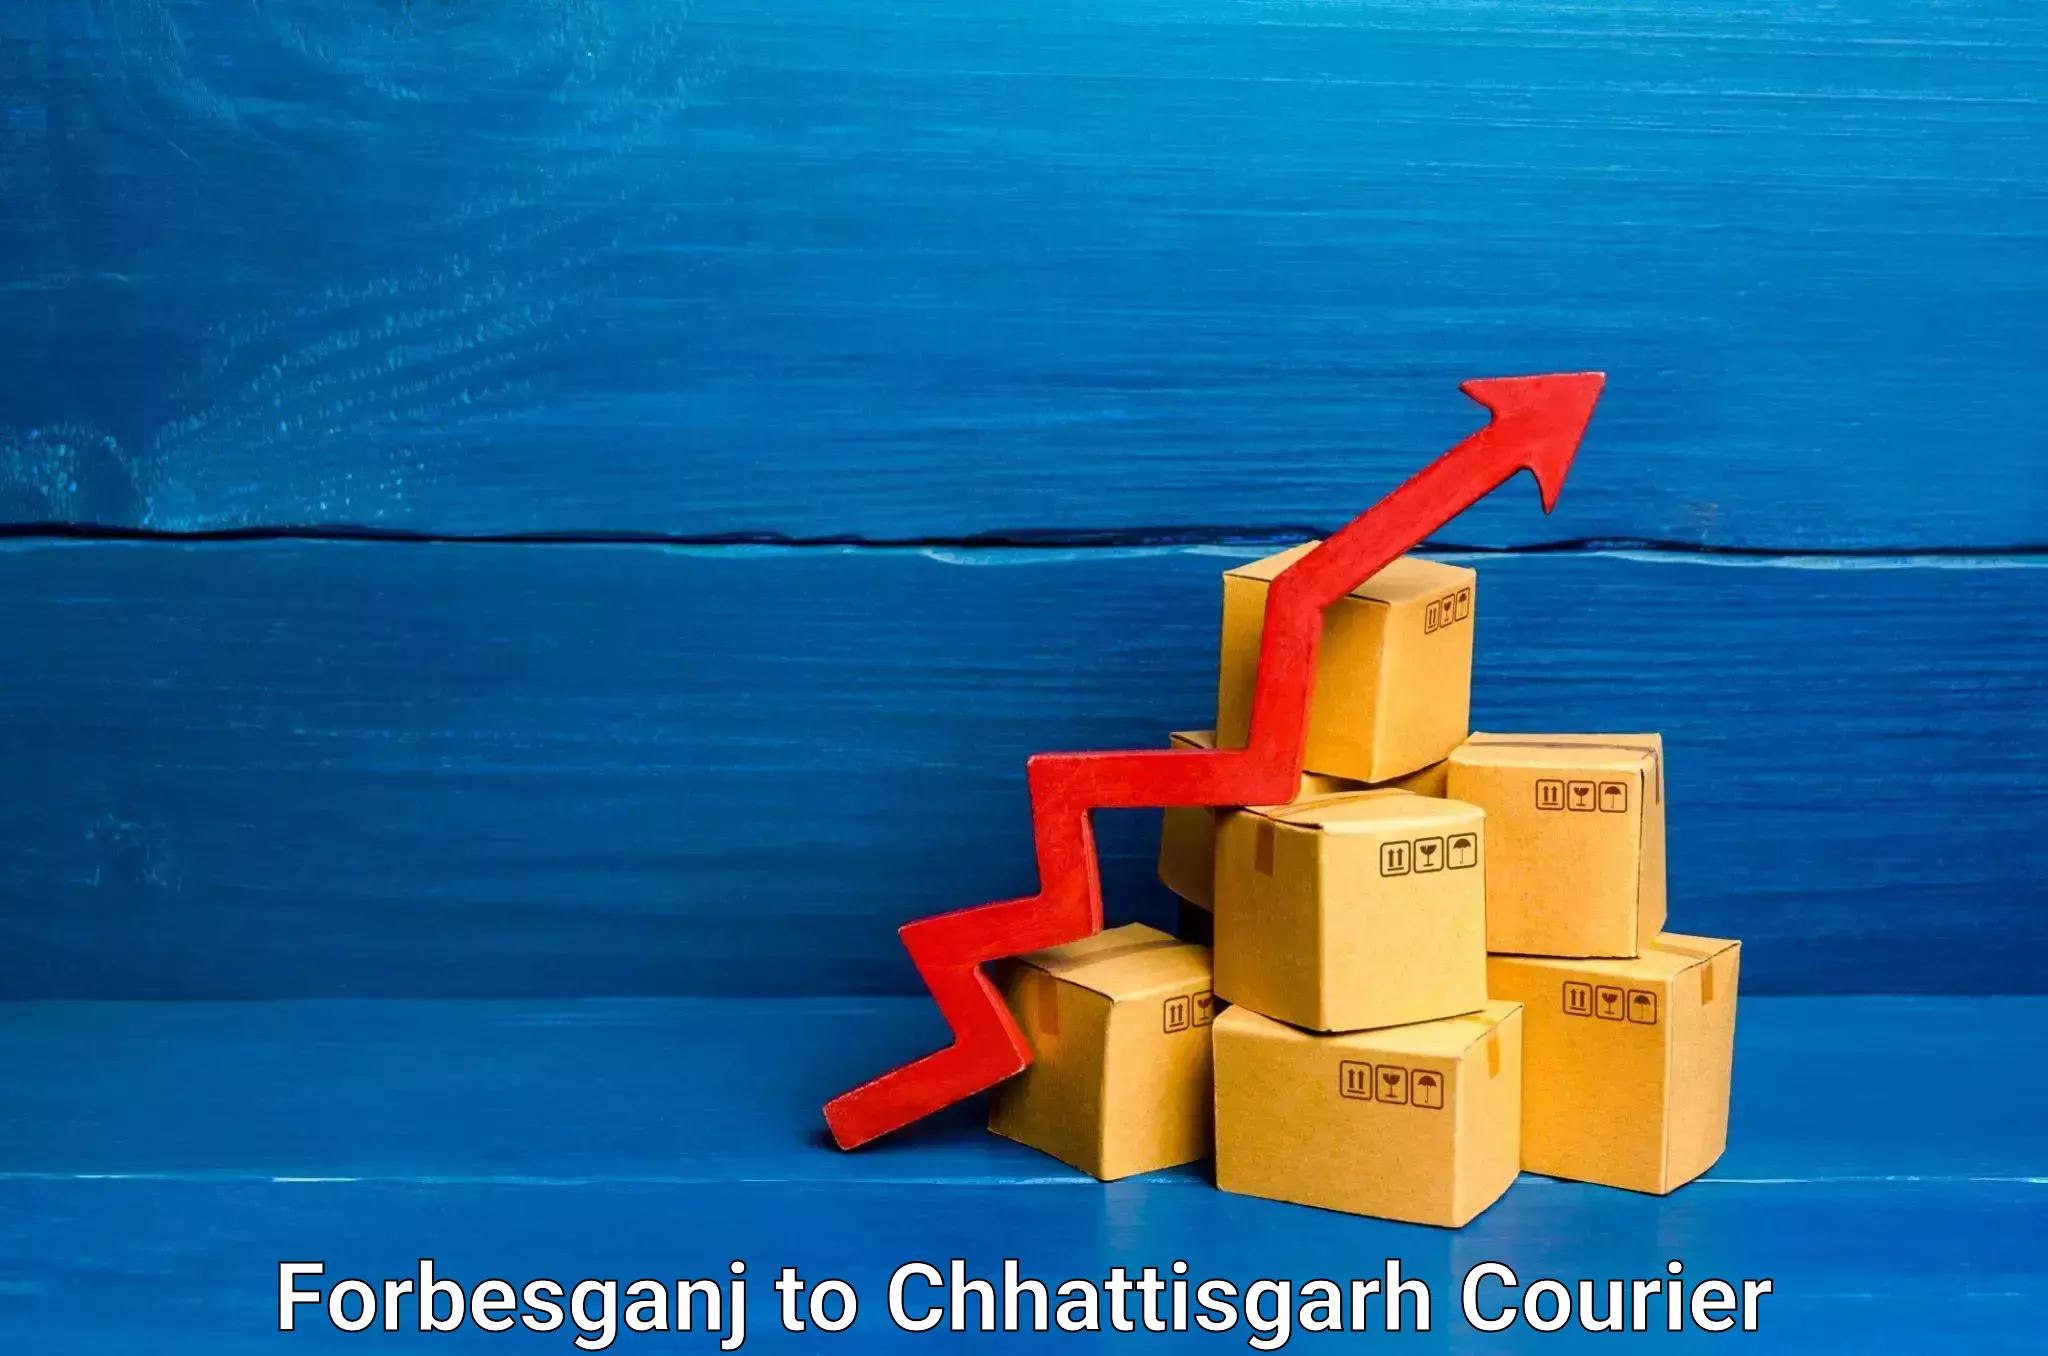 Furniture delivery service Forbesganj to Chhattisgarh